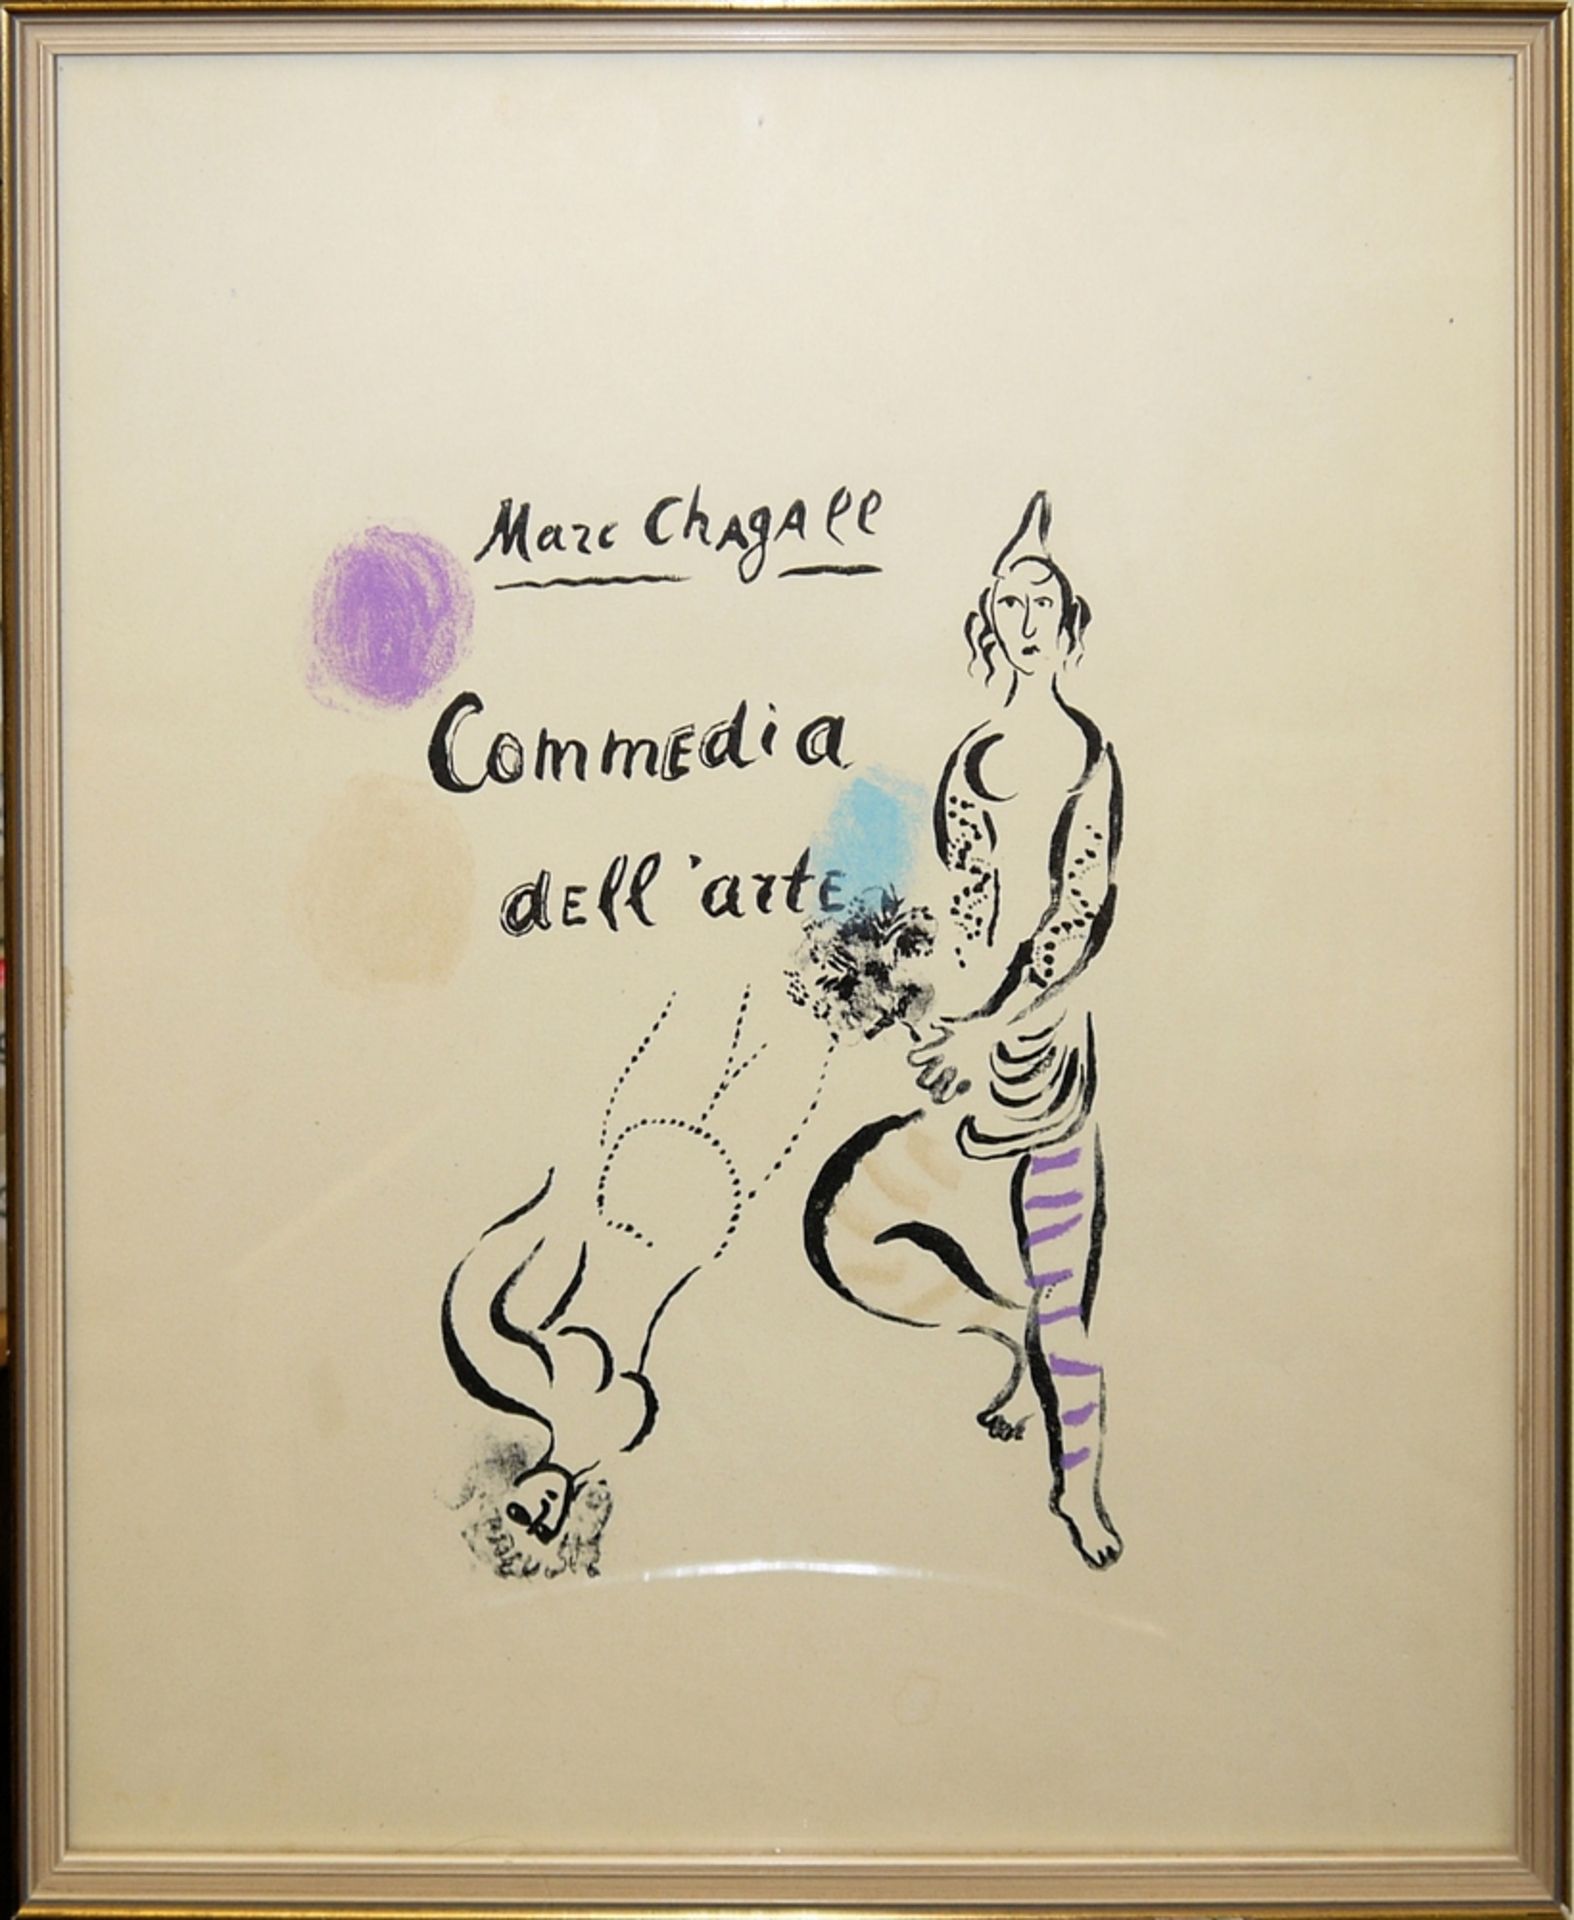 Marc Chagall, “Commedia dell’arte”, Farblithographie von 1963 & Paul Flora, “Venezianische